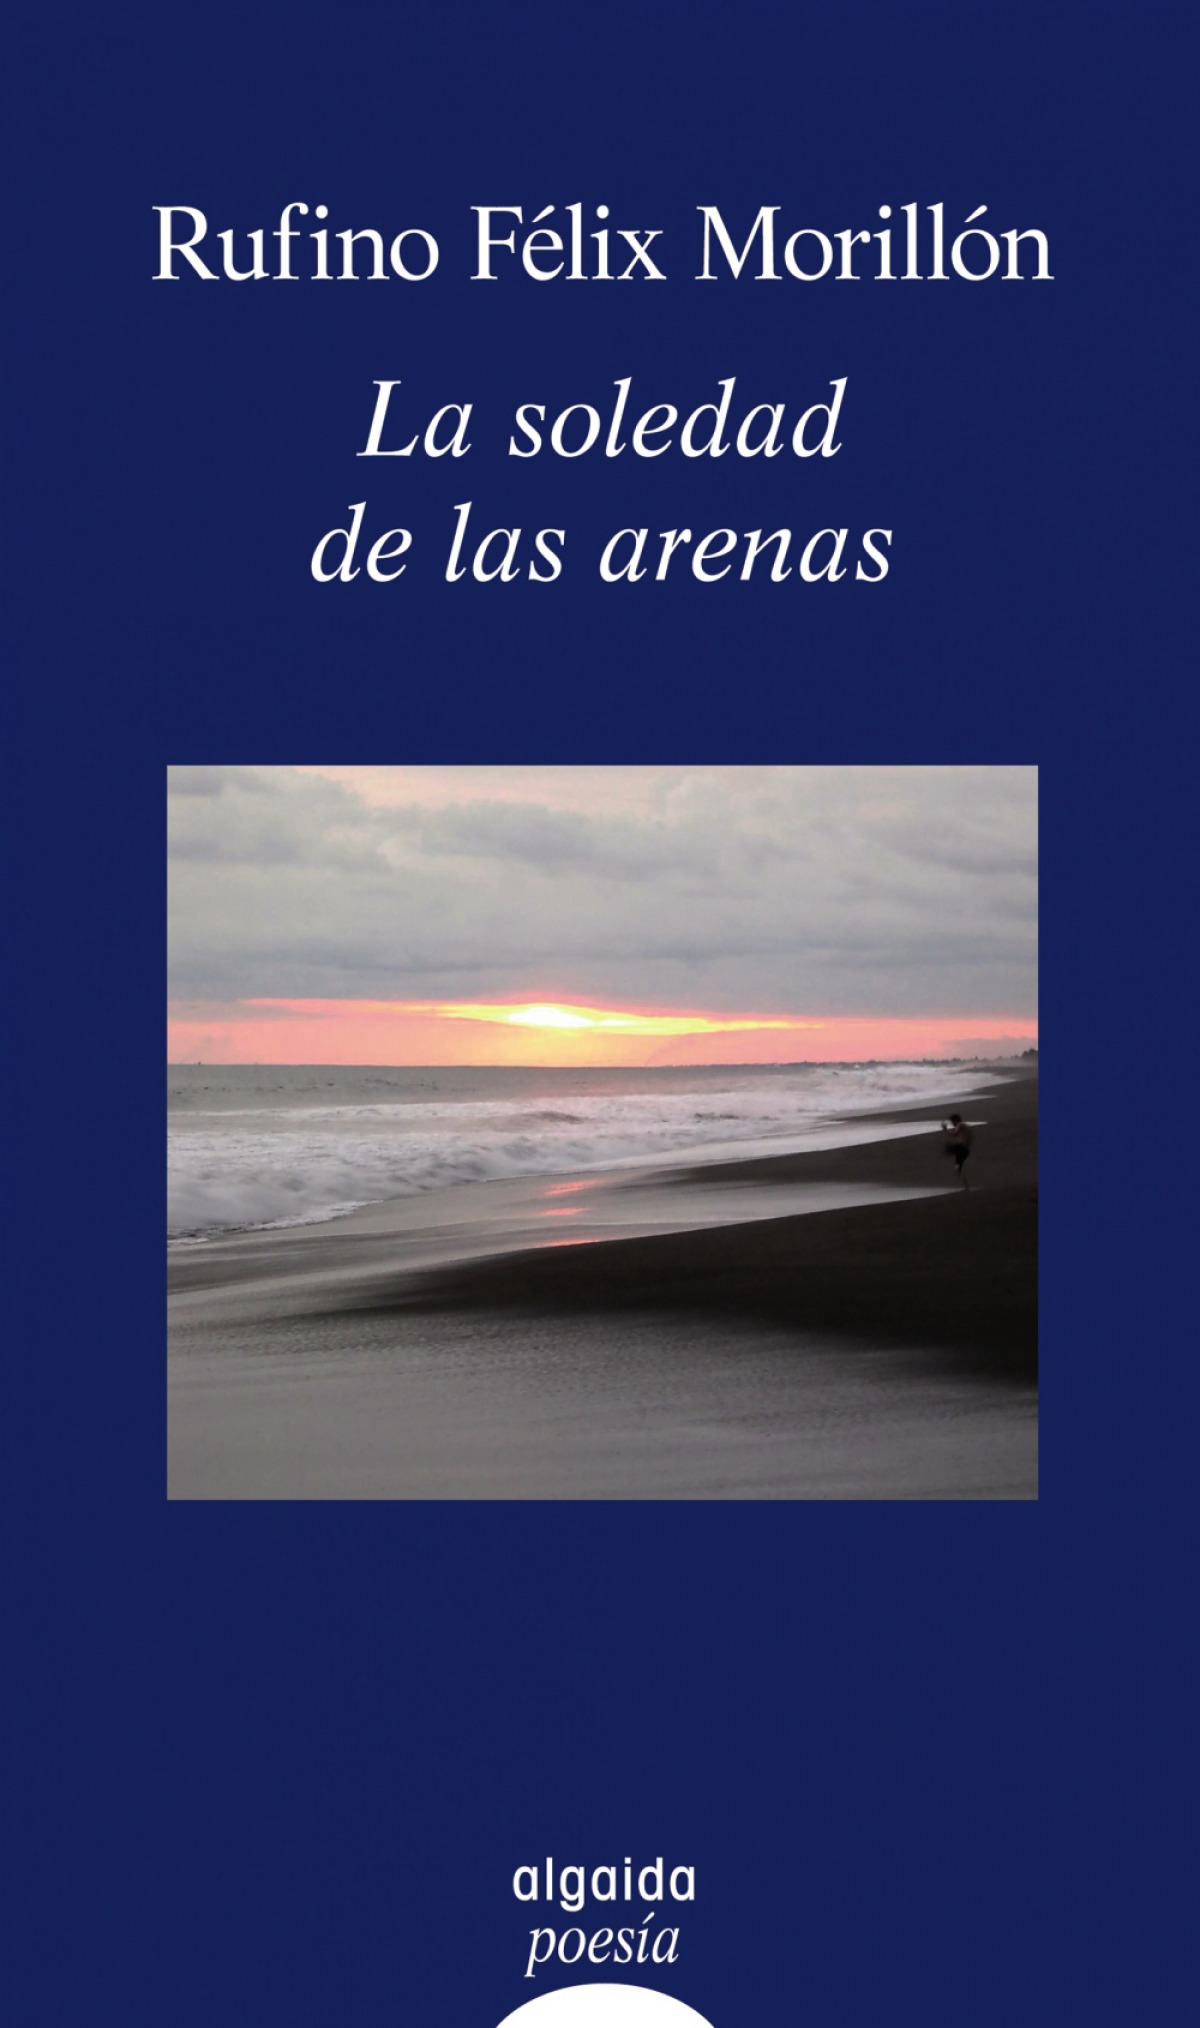 La soledad de las arenas - Felix Morillon,Rufino